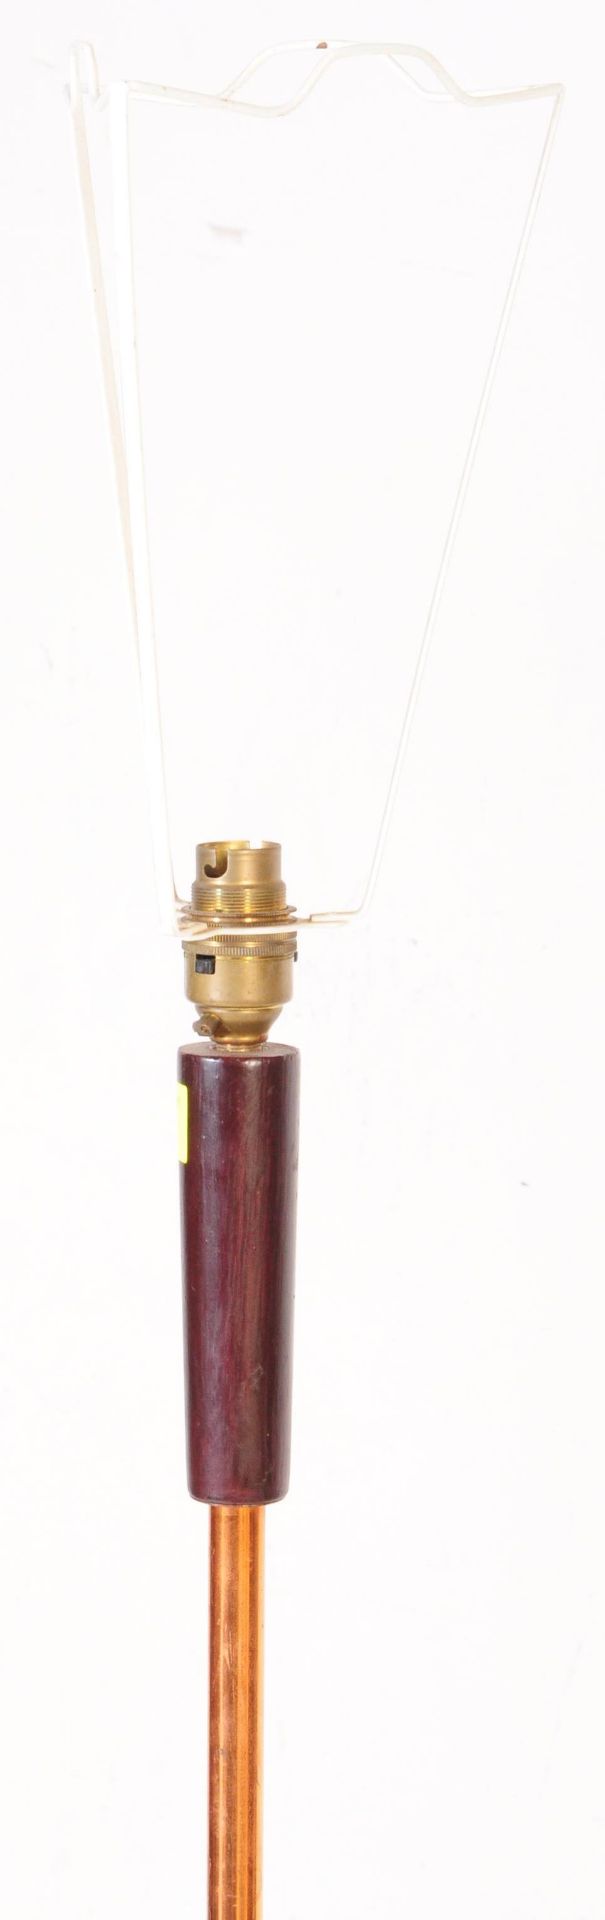 RETRO MID CENTURY DANISH INSPIRED STANDARD LAMP - Image 2 of 4